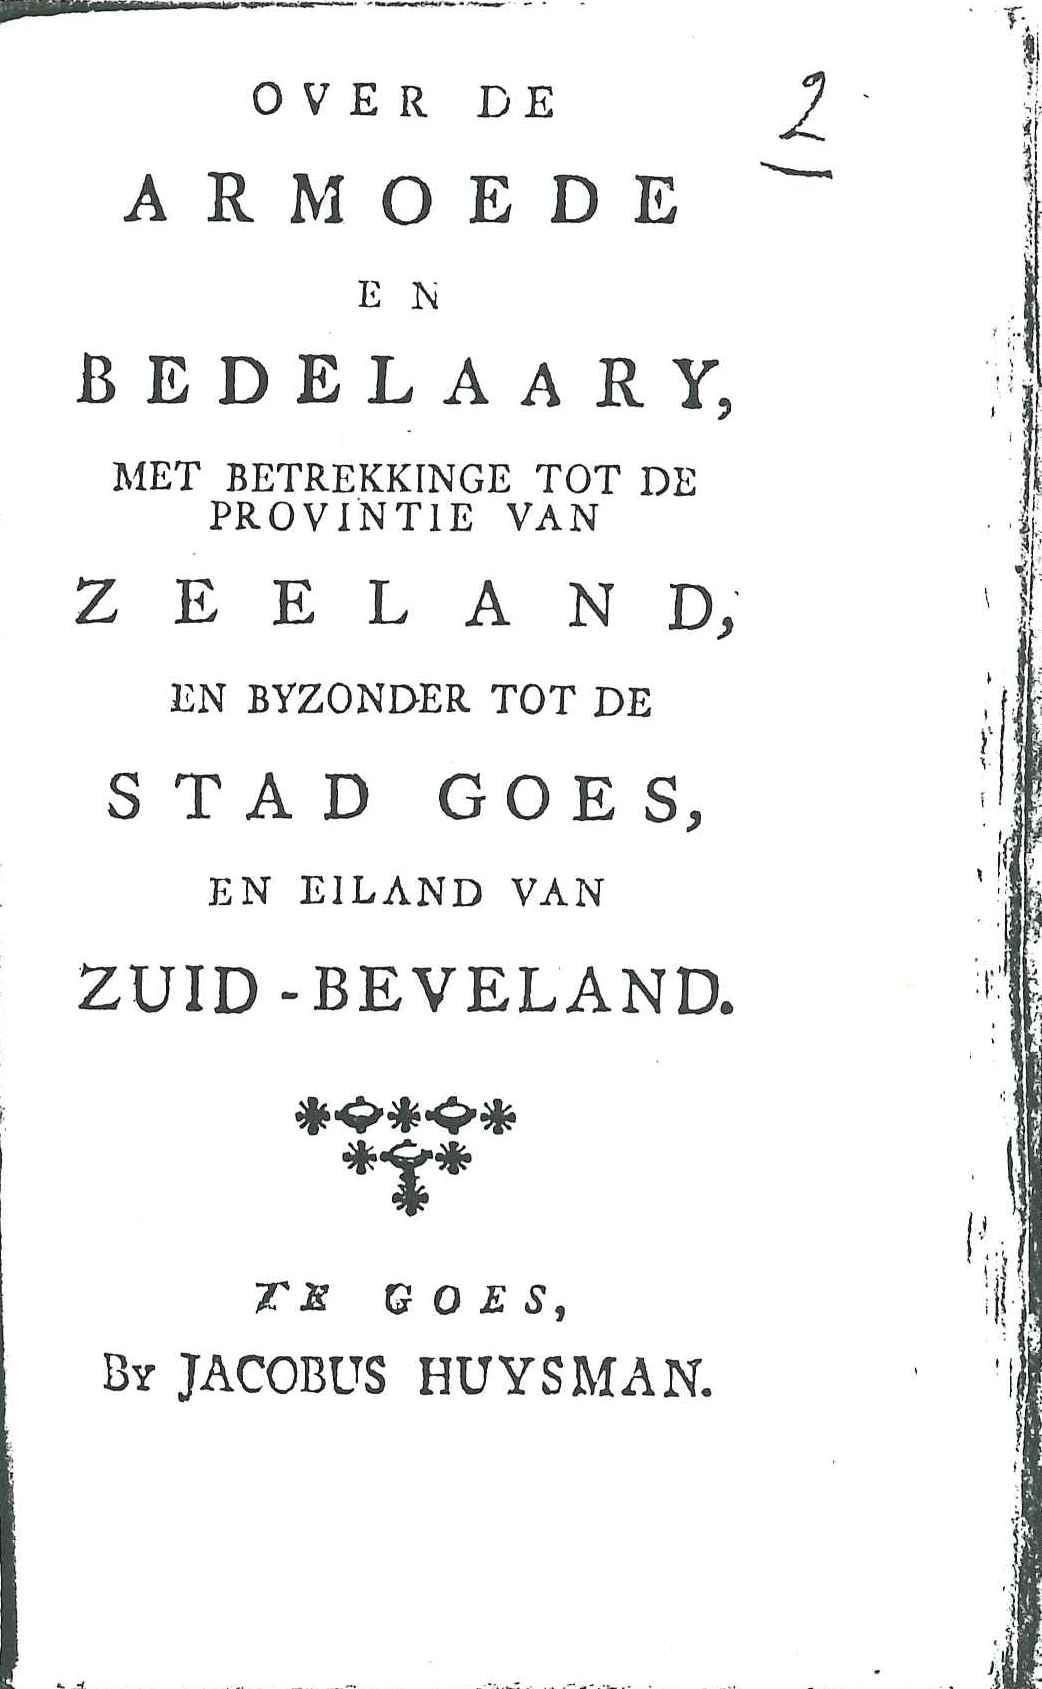 Brochure over de armoede en bedelarij in Goes en Zuid-Beveland, 1780.